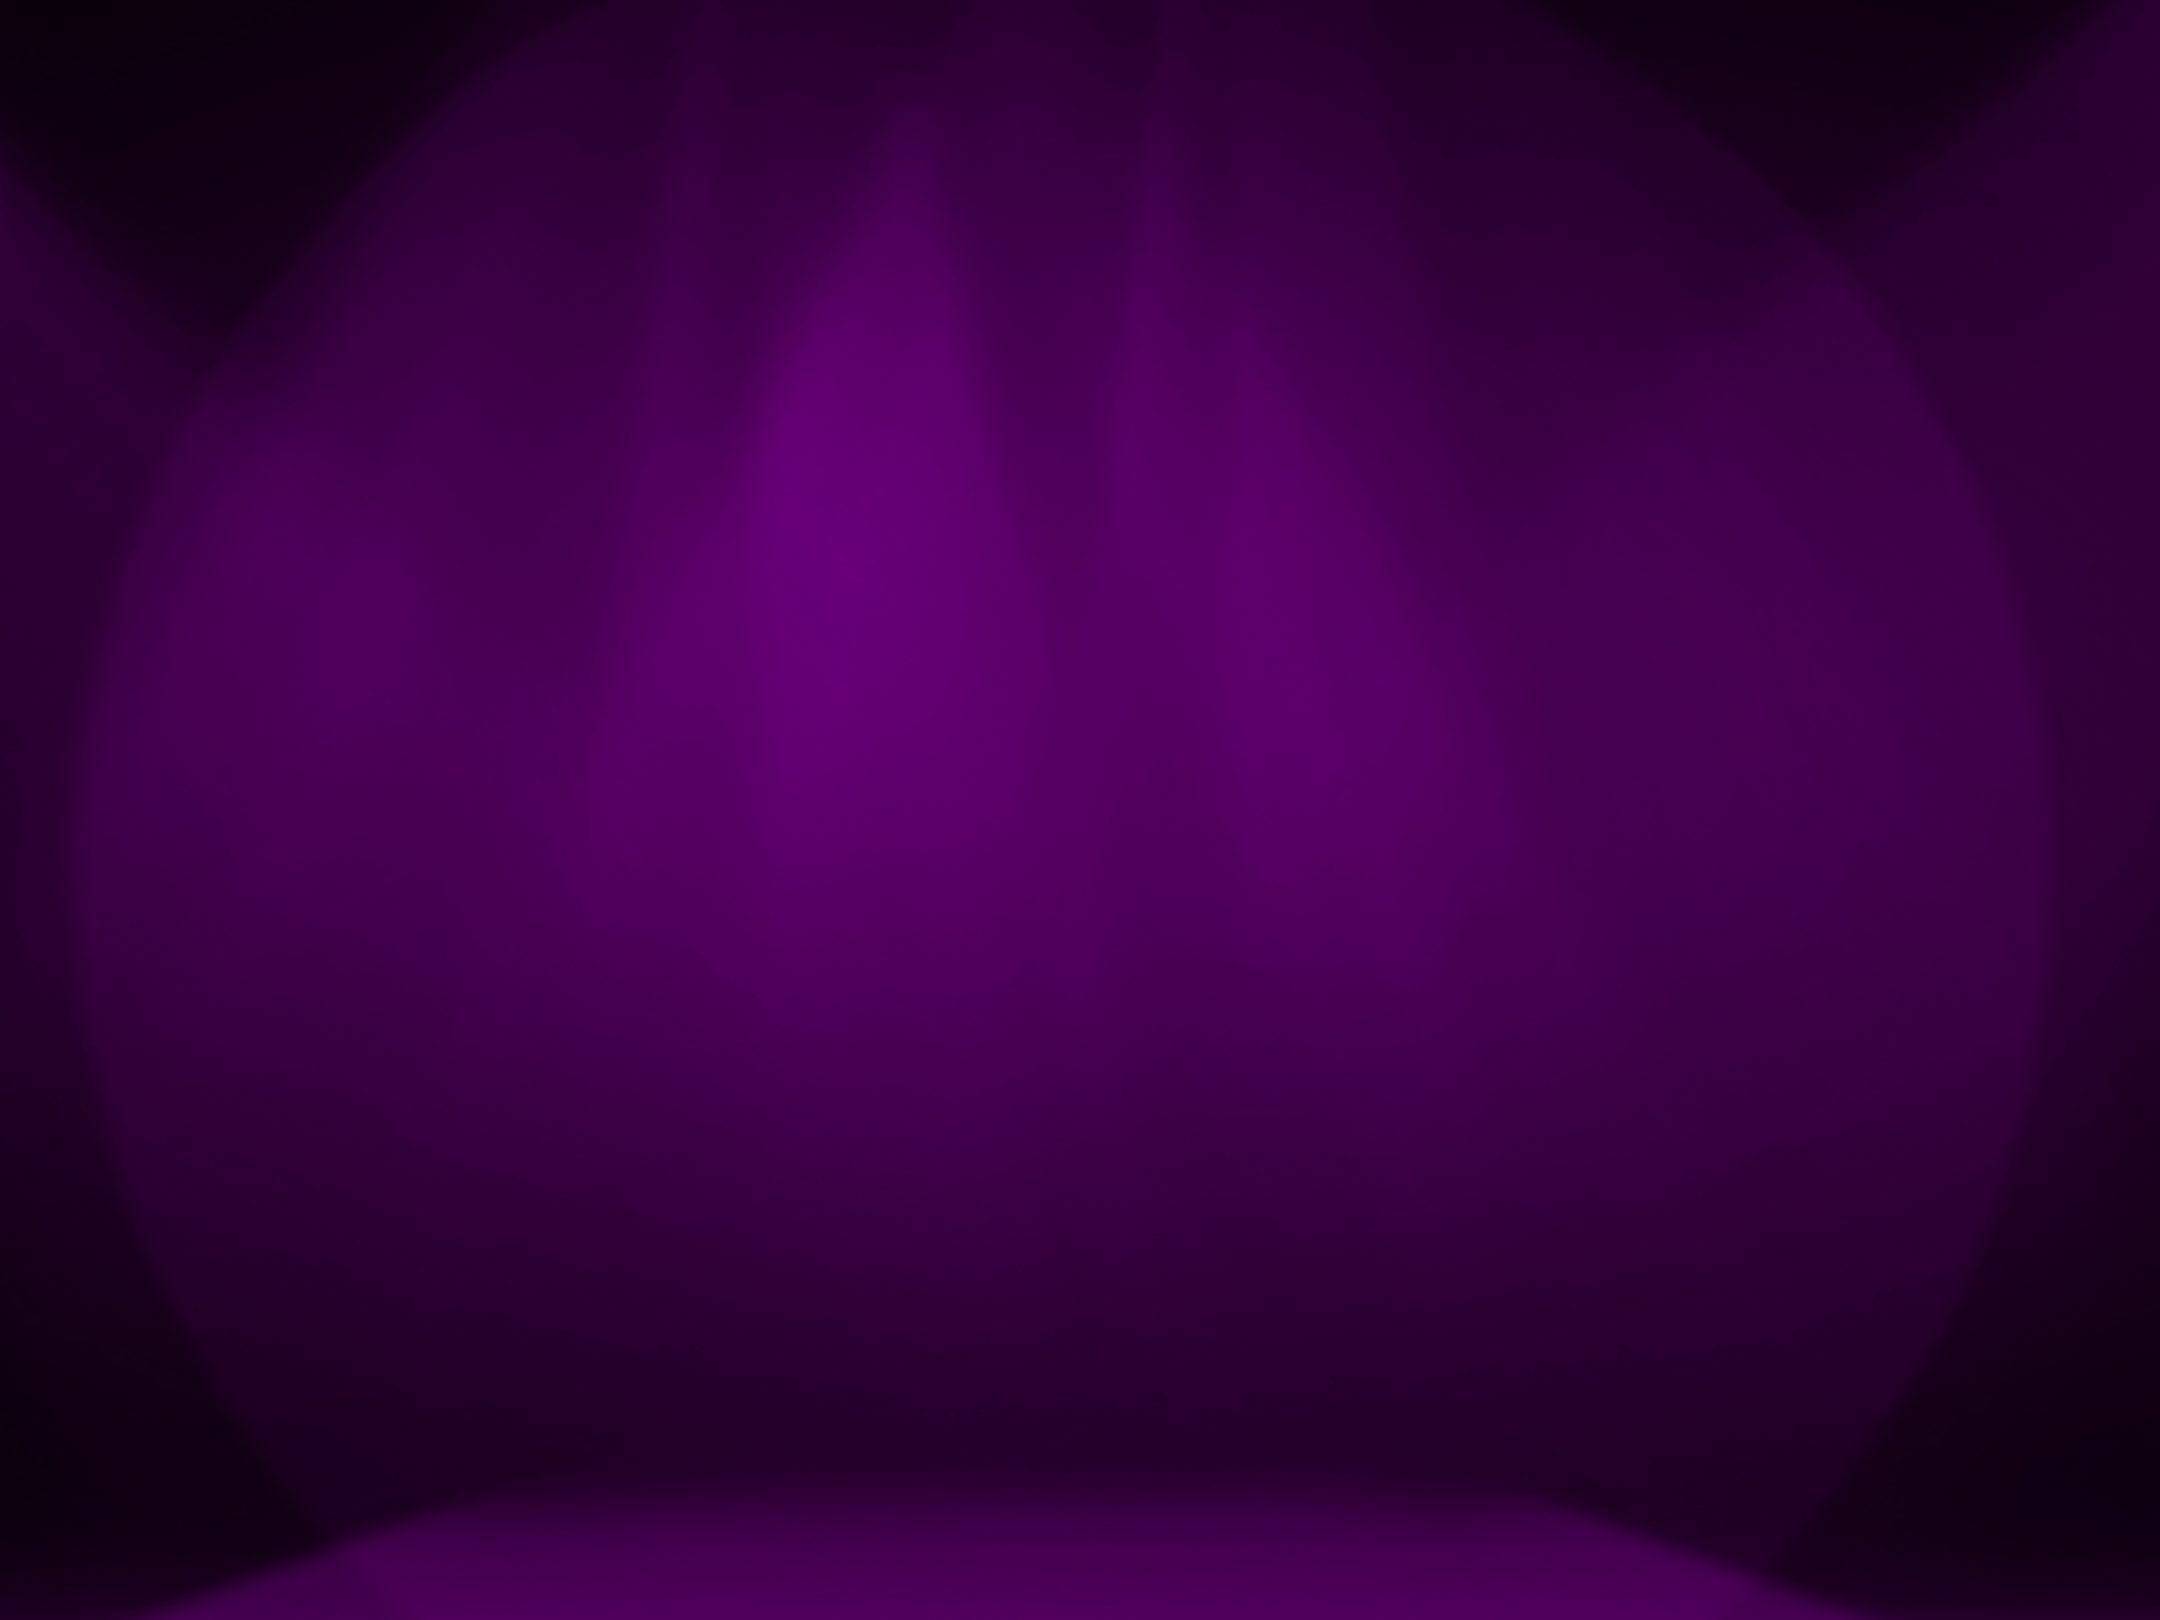 2160x1620 iPad wallpaper 4k Purple Stage Decoration iPad Wallpaper 2160x1620 pixels resolution